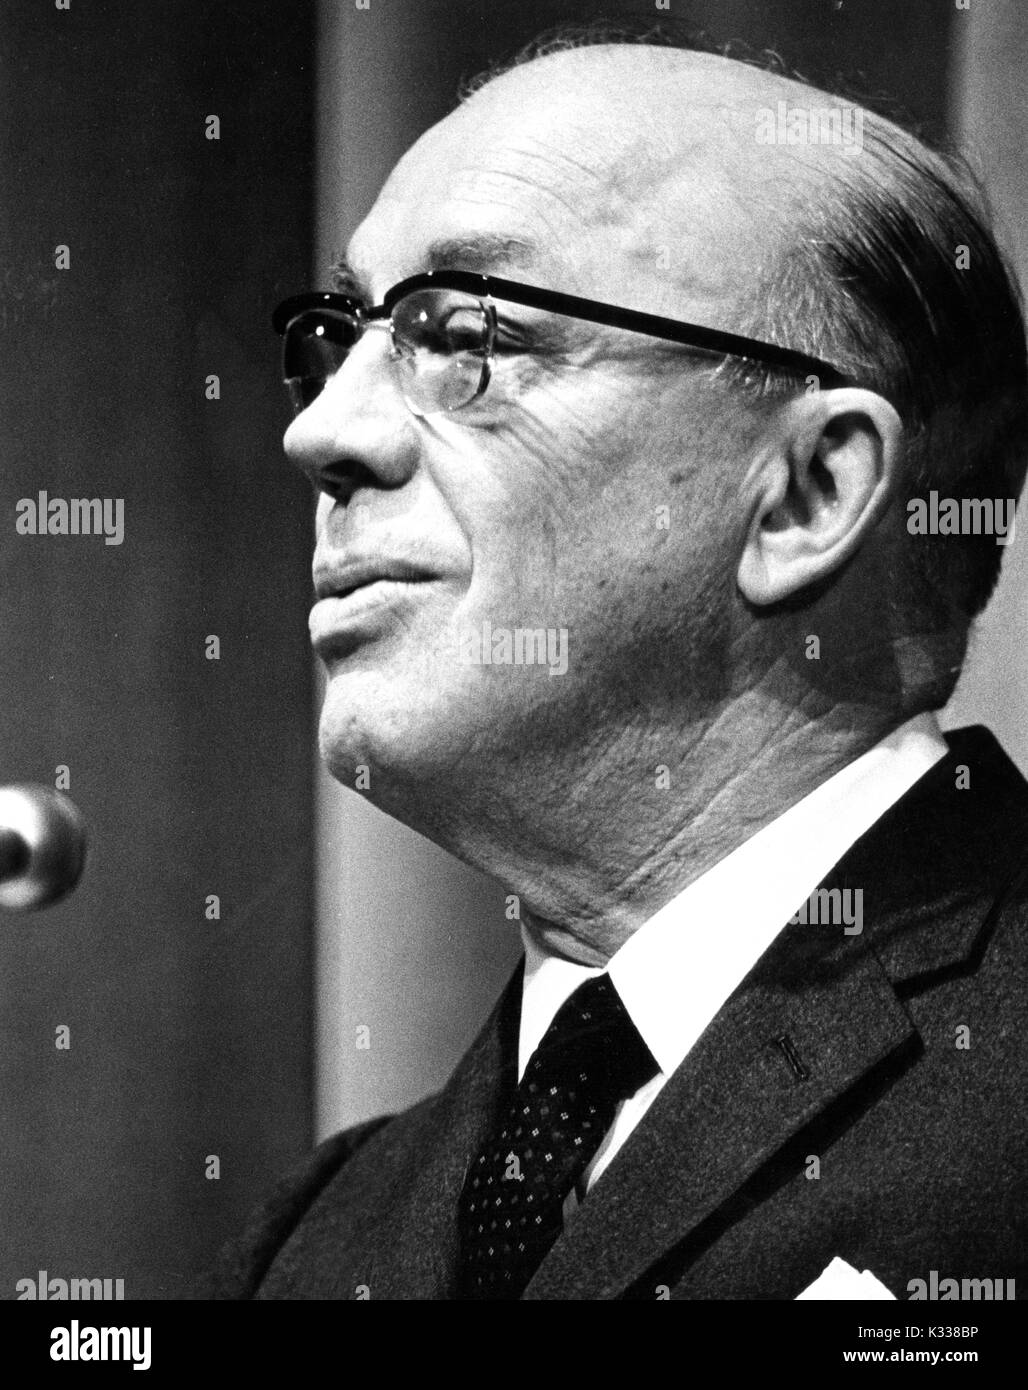 Cándido retrato de American Educational administrador y Presidente de la Universidad Johns Hopkins Milton S. Eisenhower hablando a un micrófono, 1970. Foto de stock